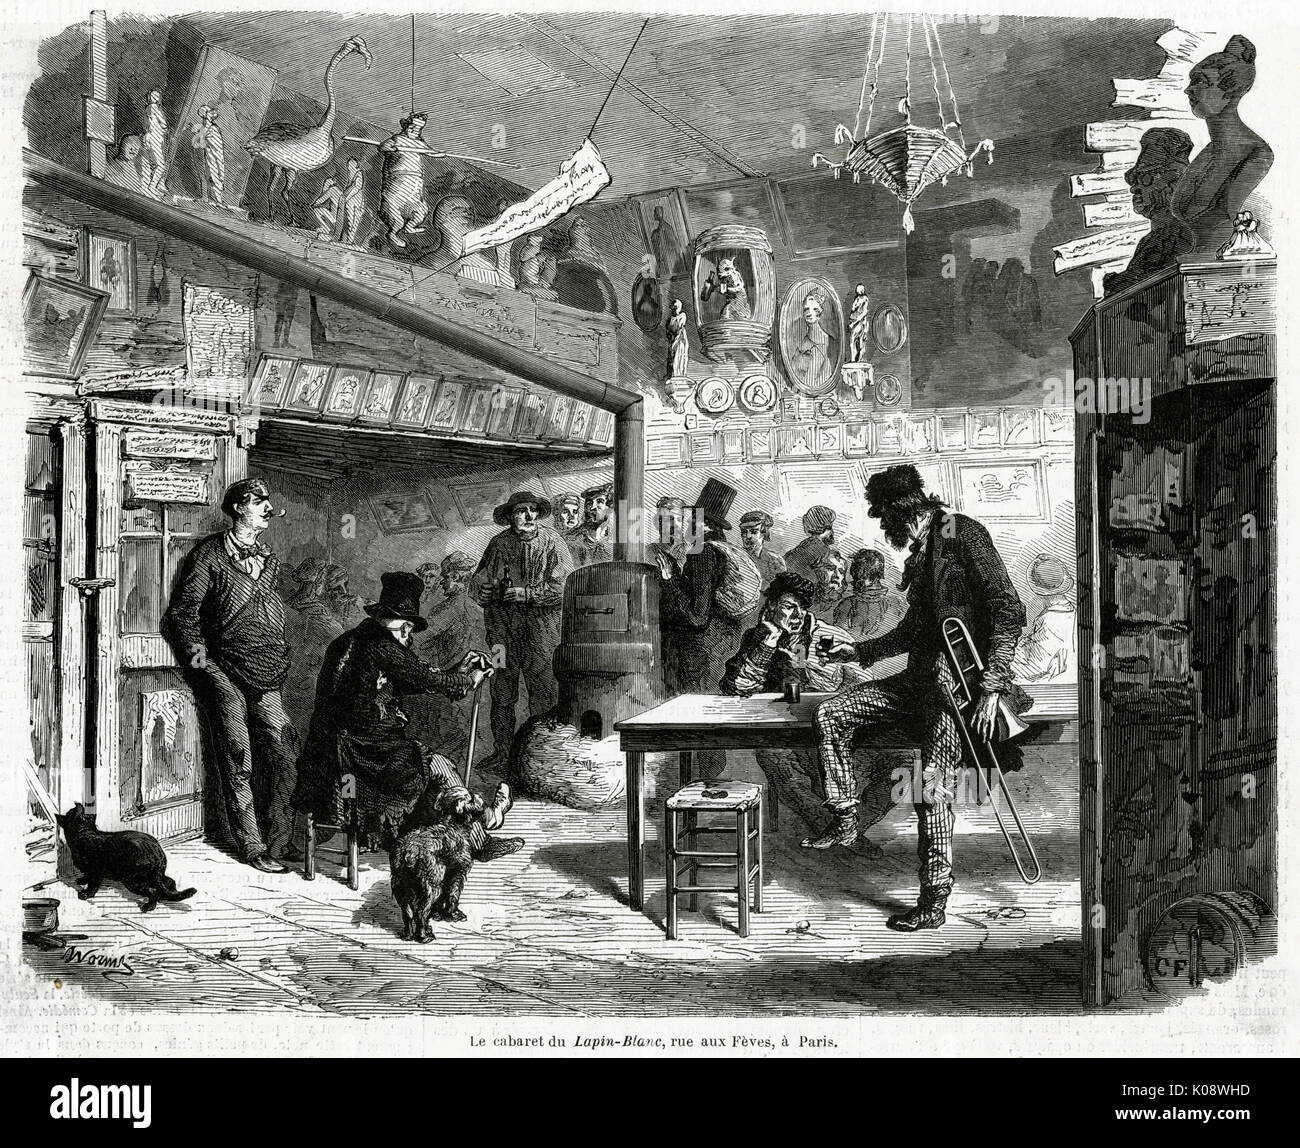 Cabaret in Lapin Blanc, Paris, 1860 Stock Photo